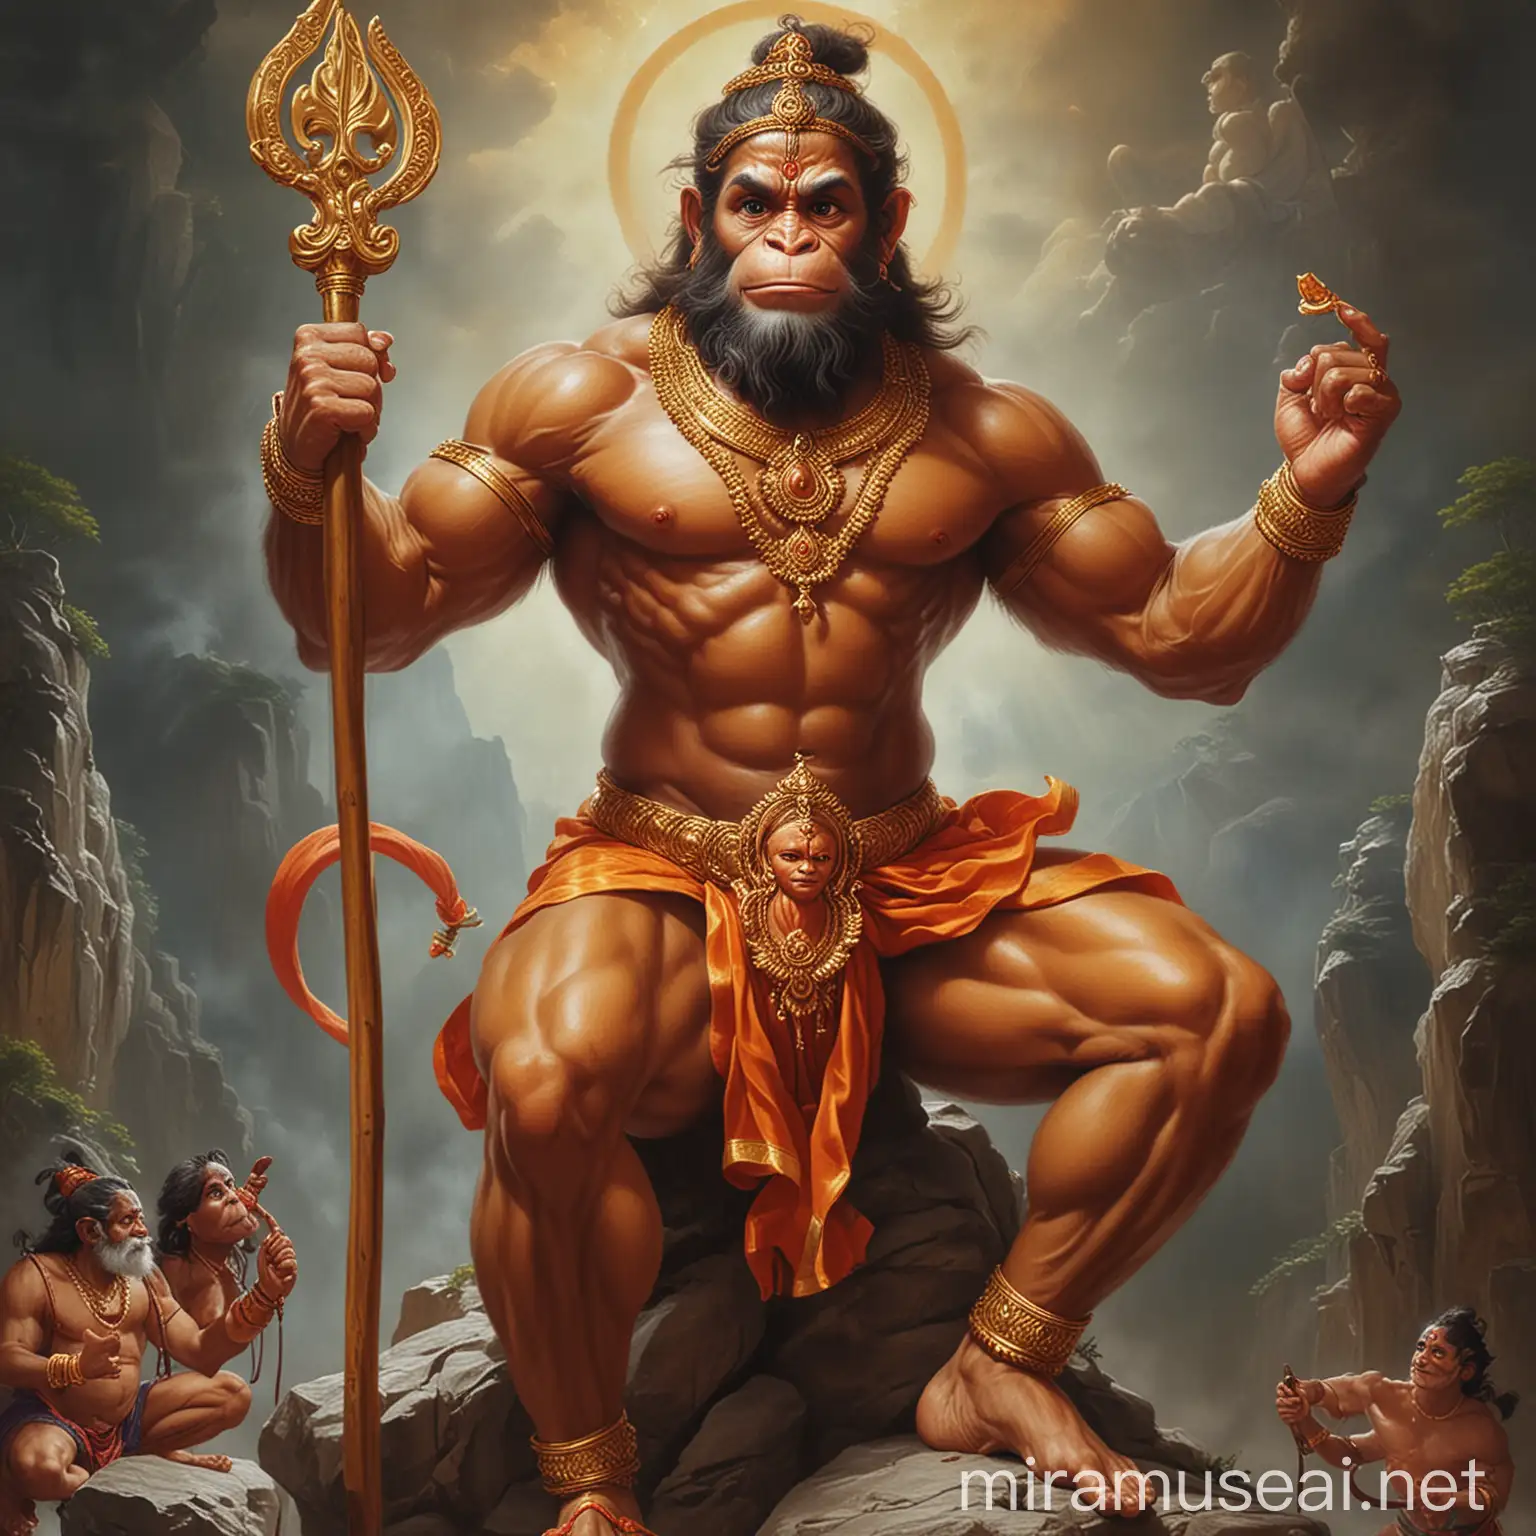 Divine Representation of Hanuman Me Hu Bajrangi Balwan Depiction